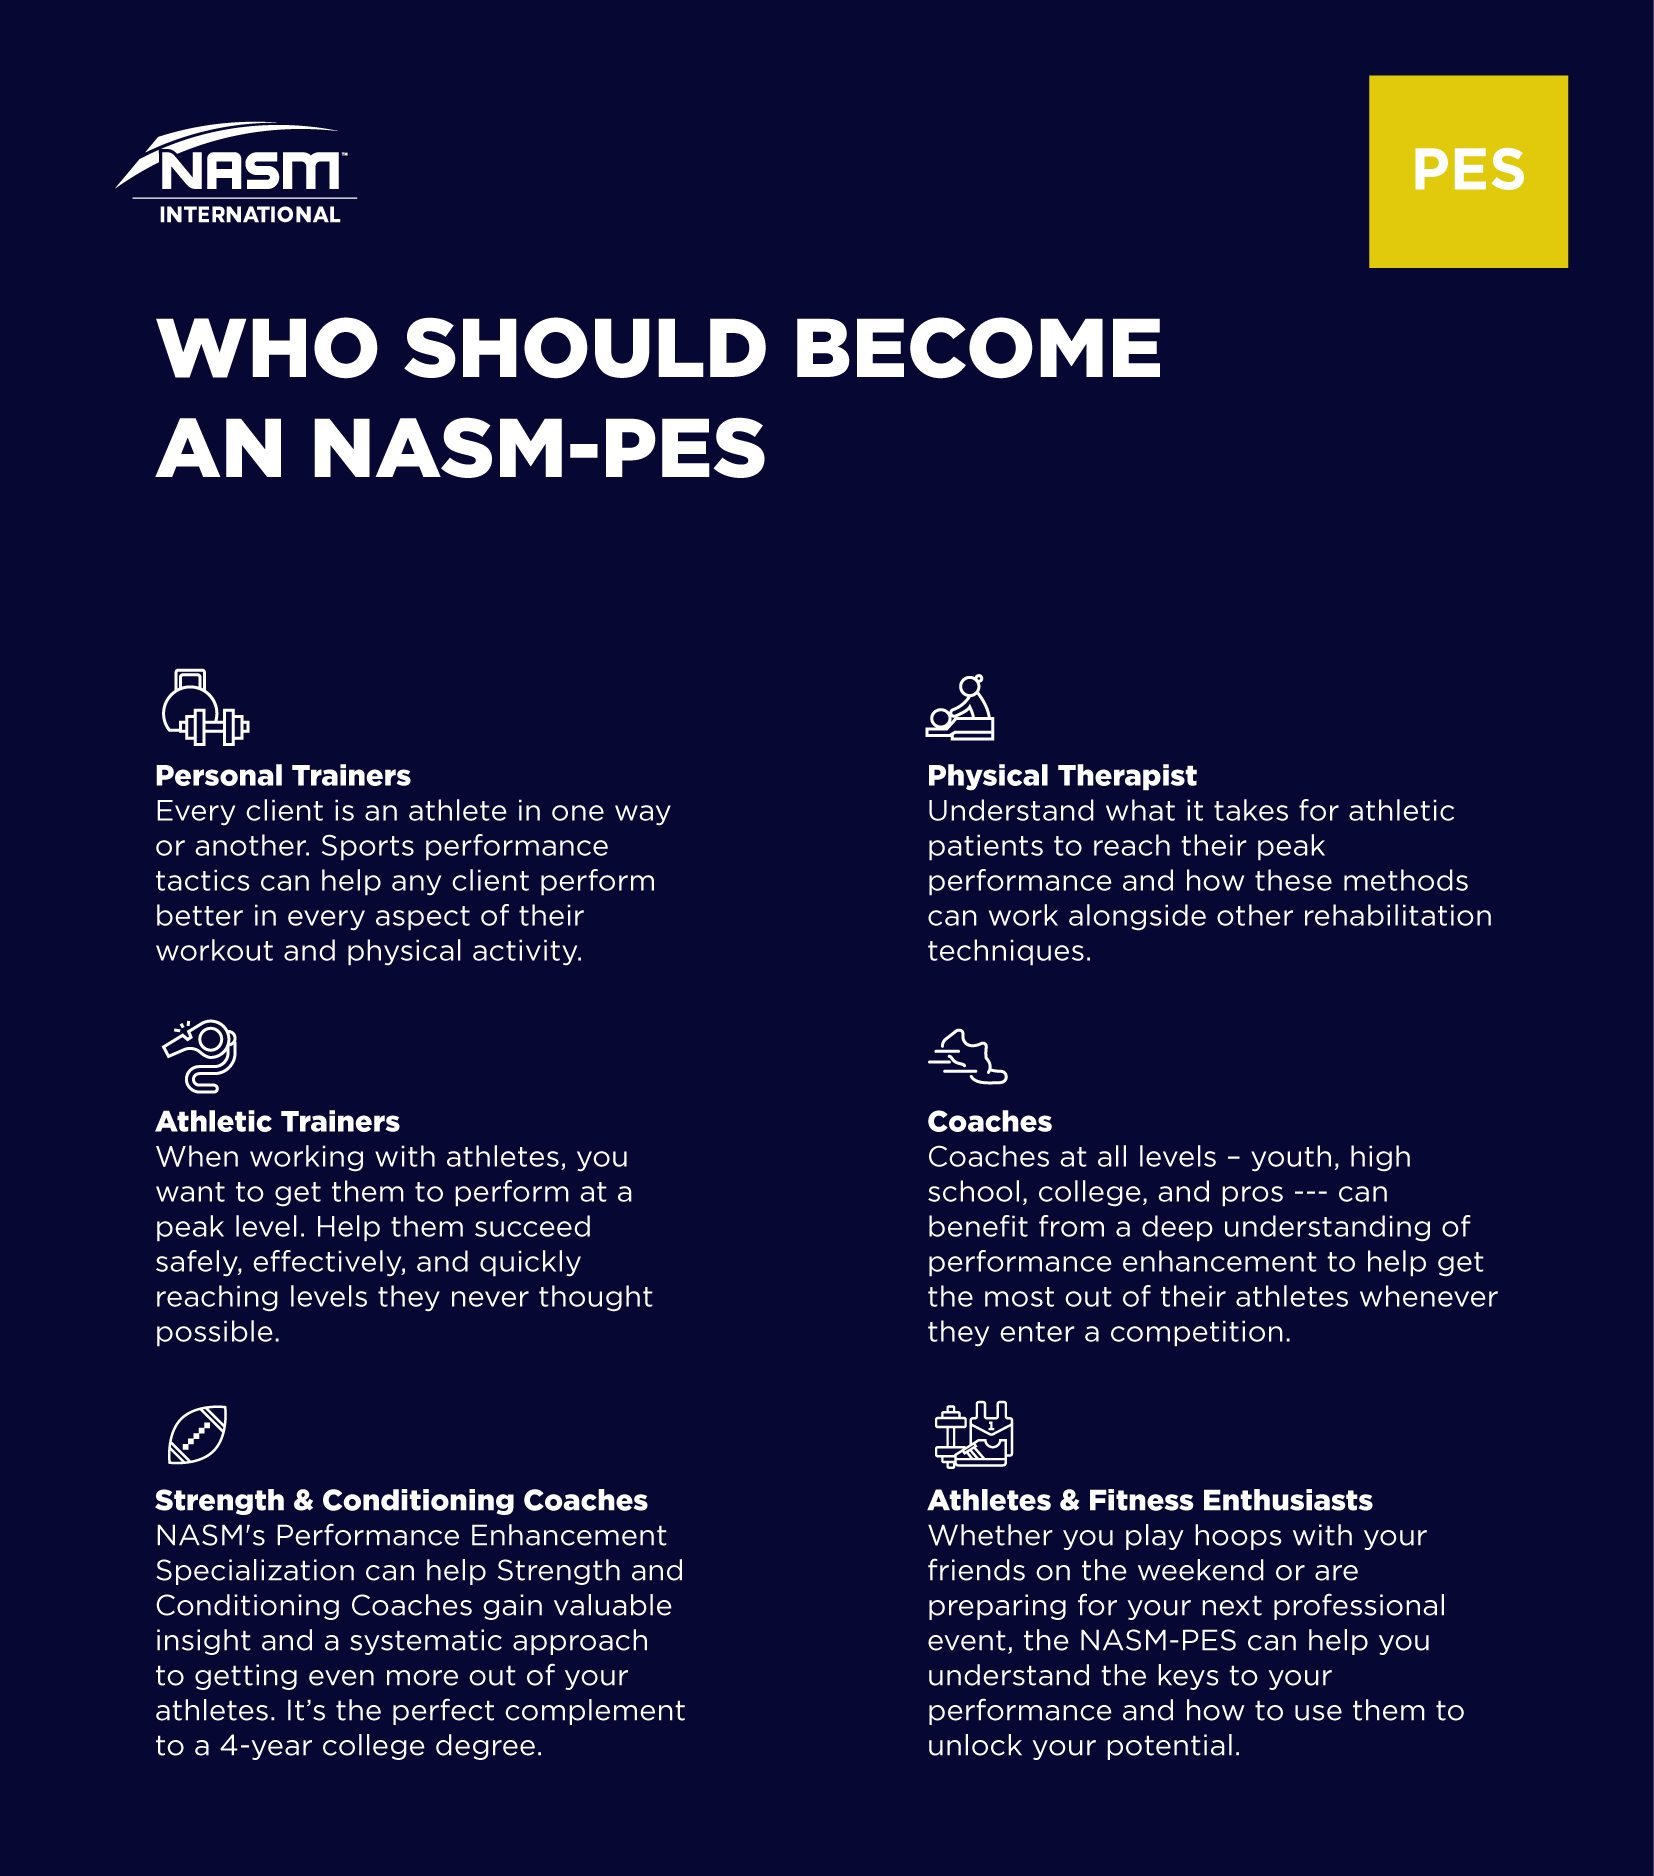 pfc shop - NASM PES infomation-01.jpg